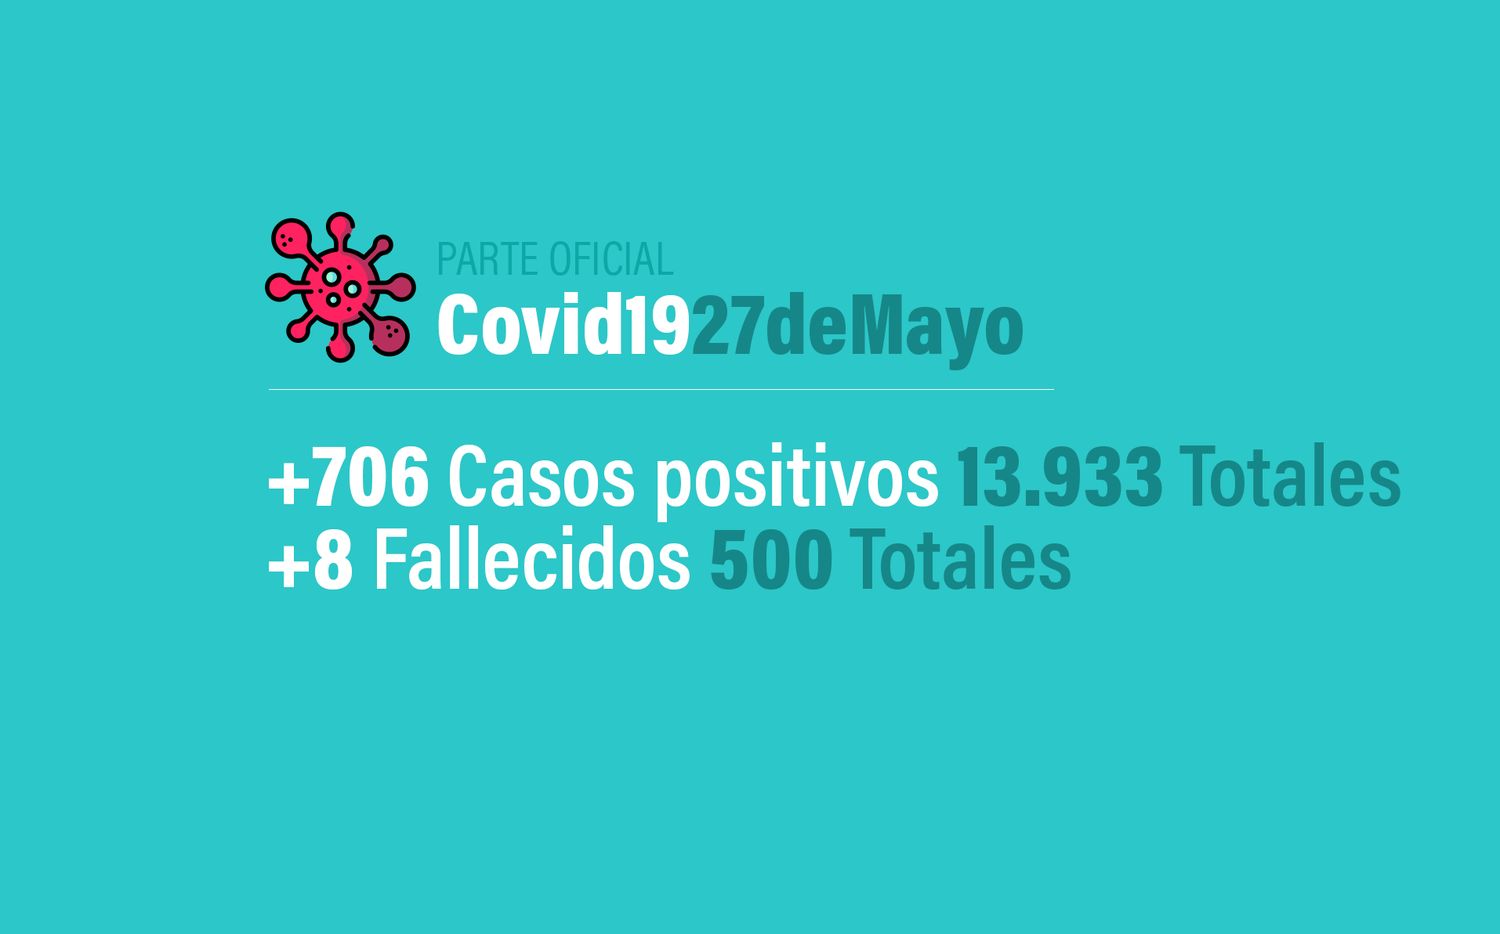 Coronavirus en Argentina: 706 nuevos casos, 13933 confirmados y 500 muertos, al 27 de mayo